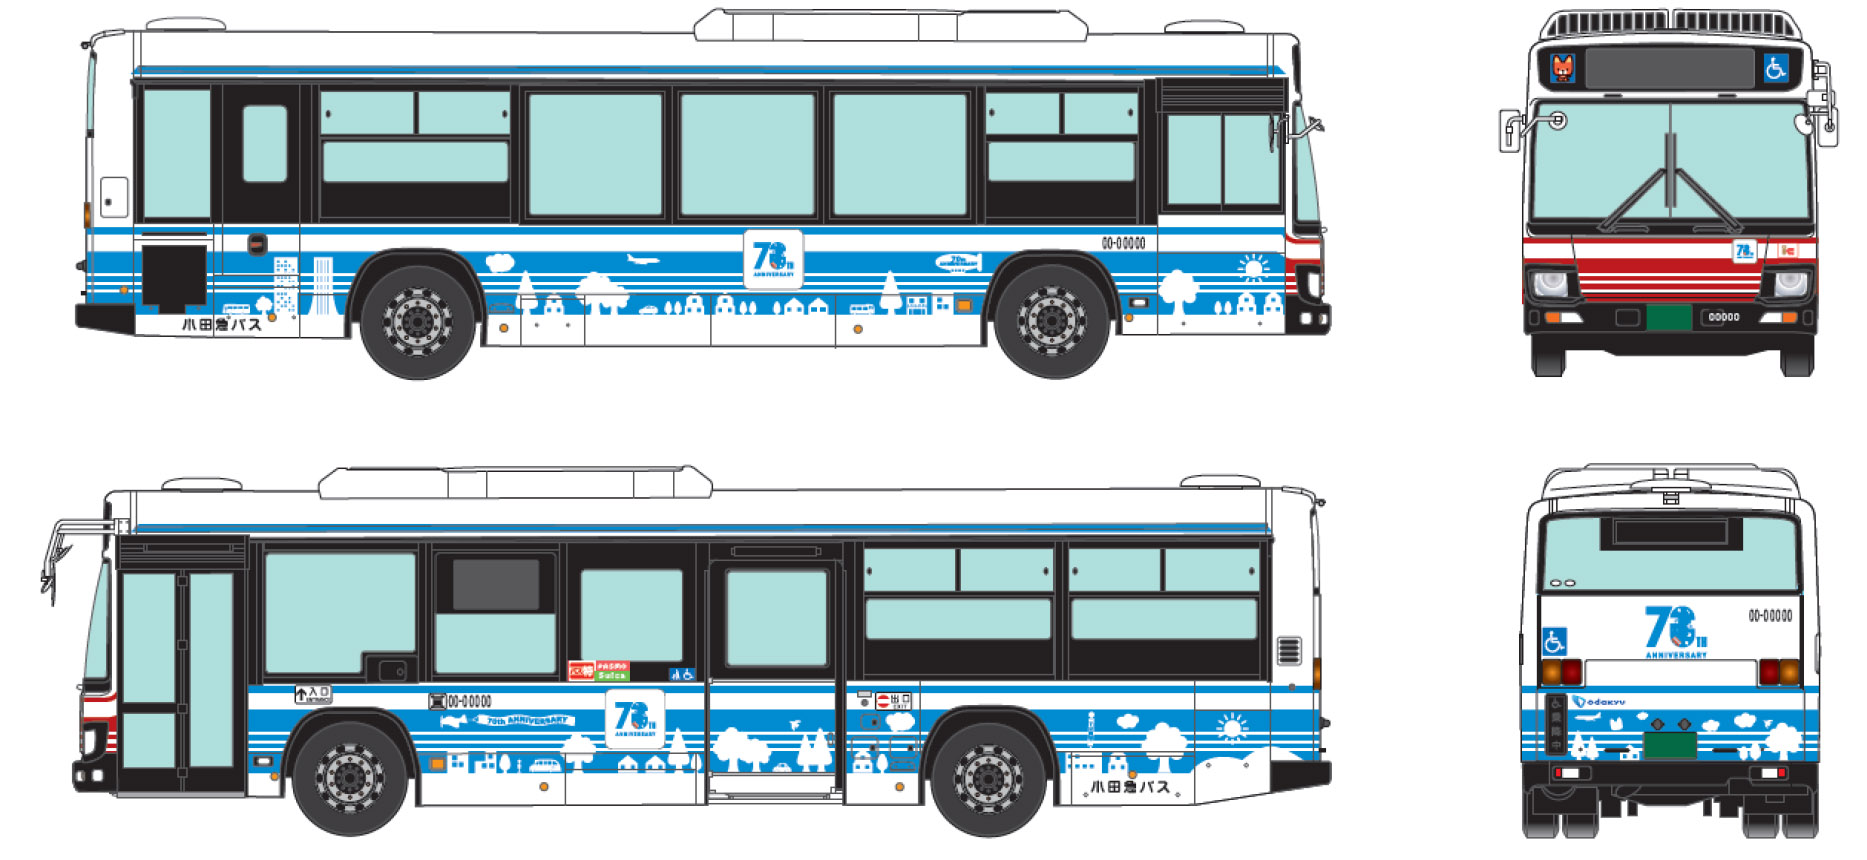 小田急バス 創立70周年を記念して 小田急ブルー のラッピングバス運行 トラベル Watch